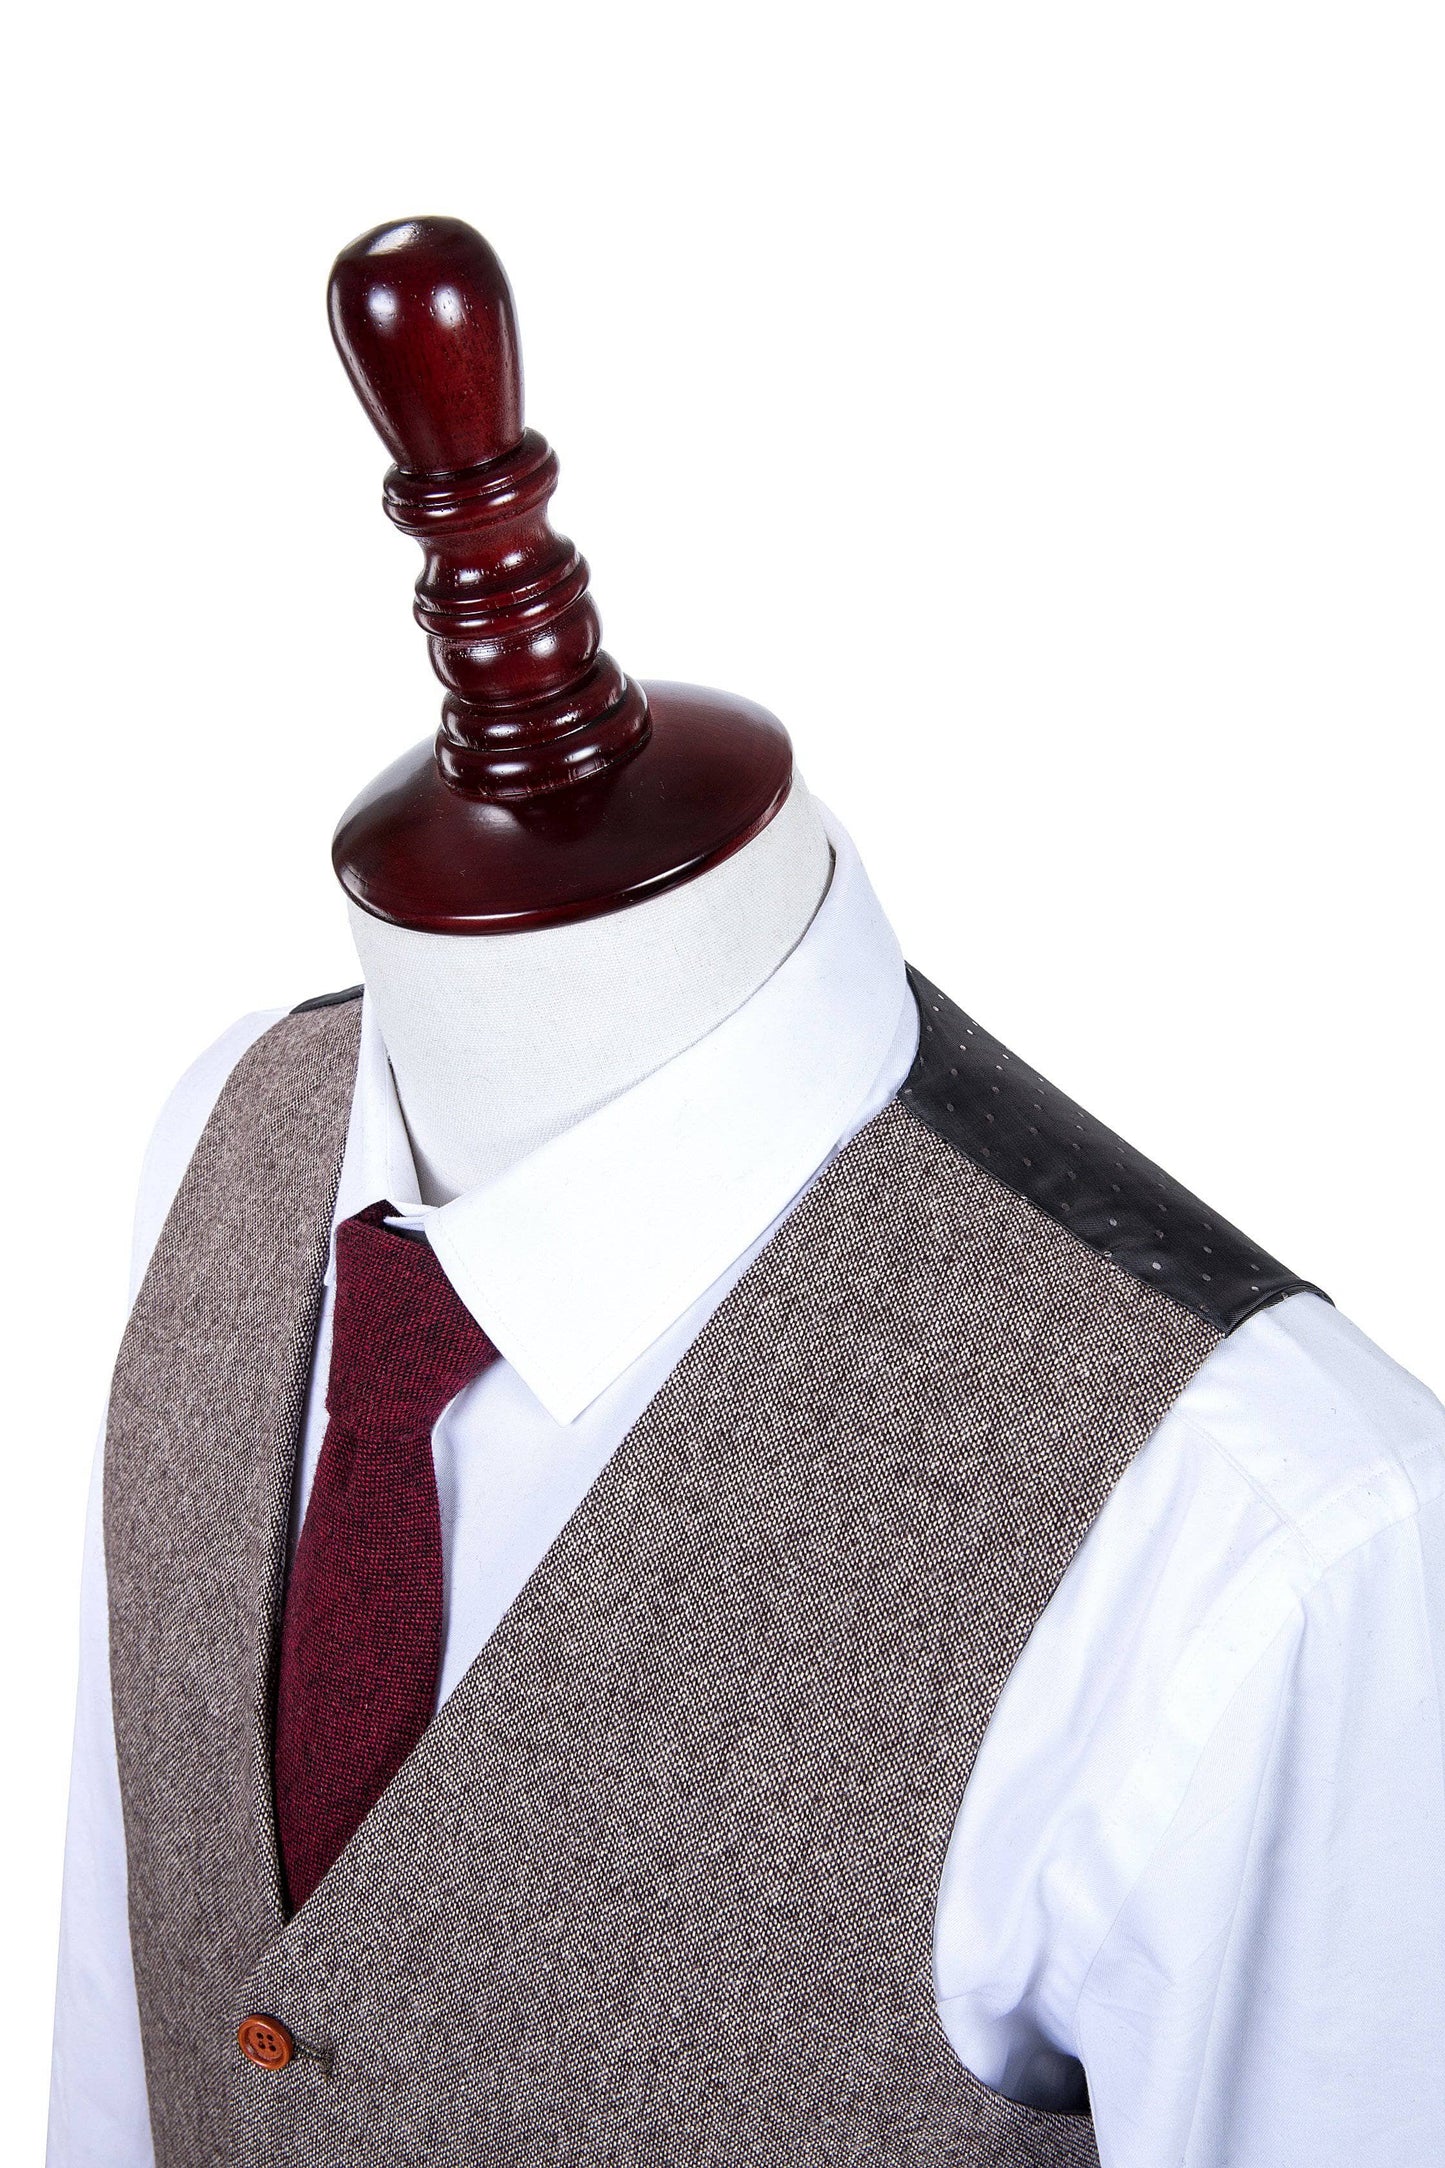 Classic Brown Barleycorn Tweed Suit